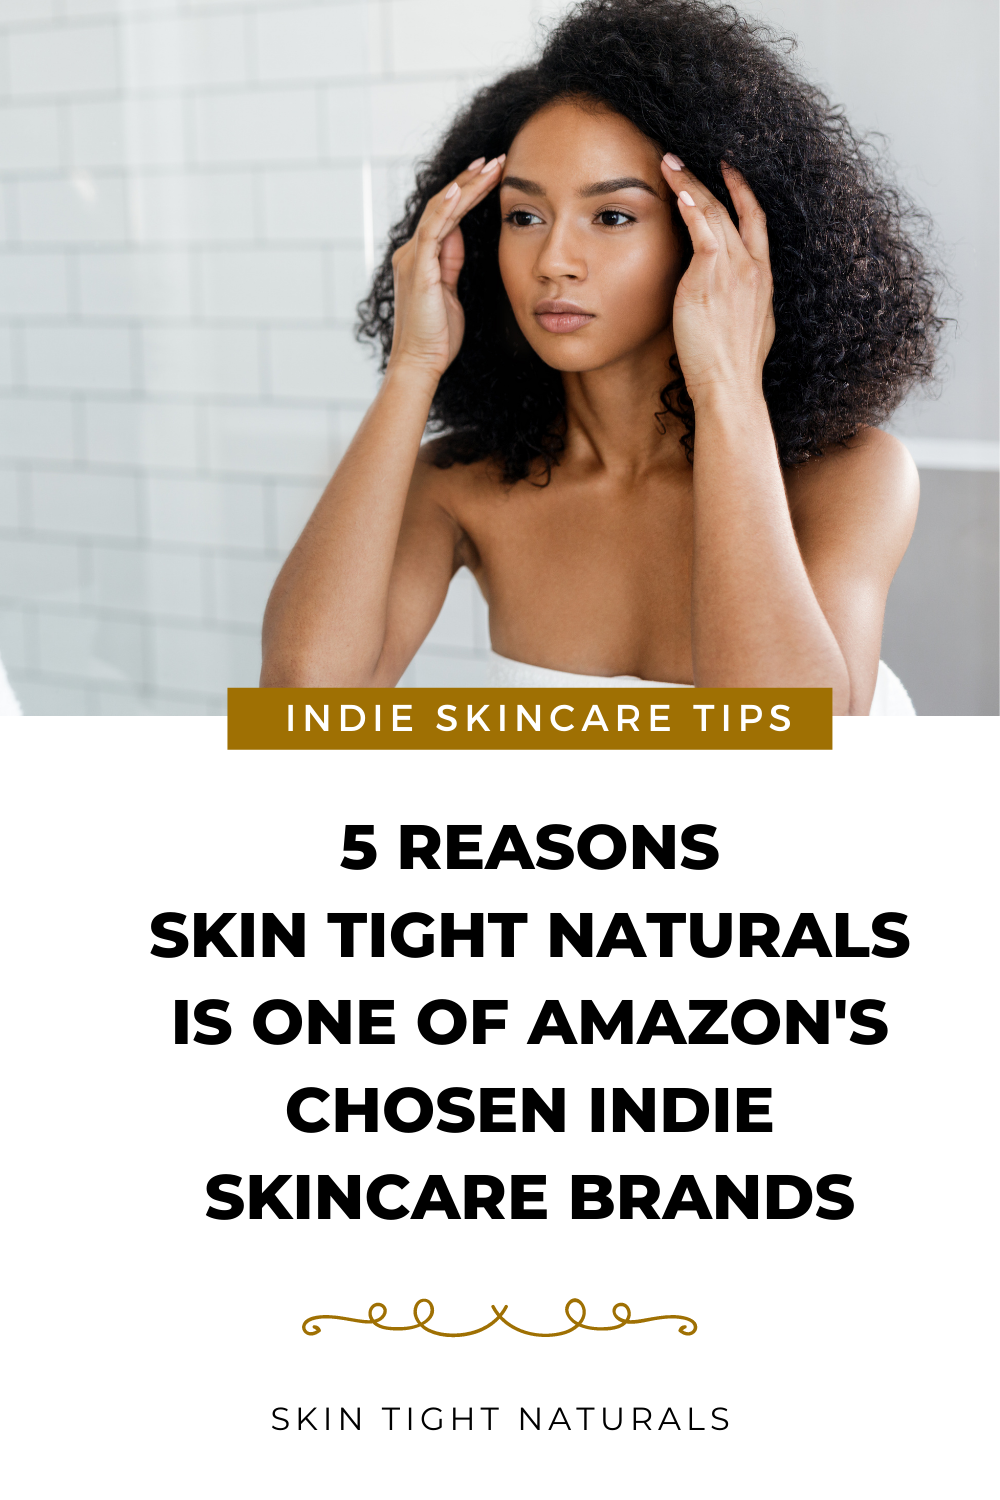 Amazon Chooses Skin Tight Naturals